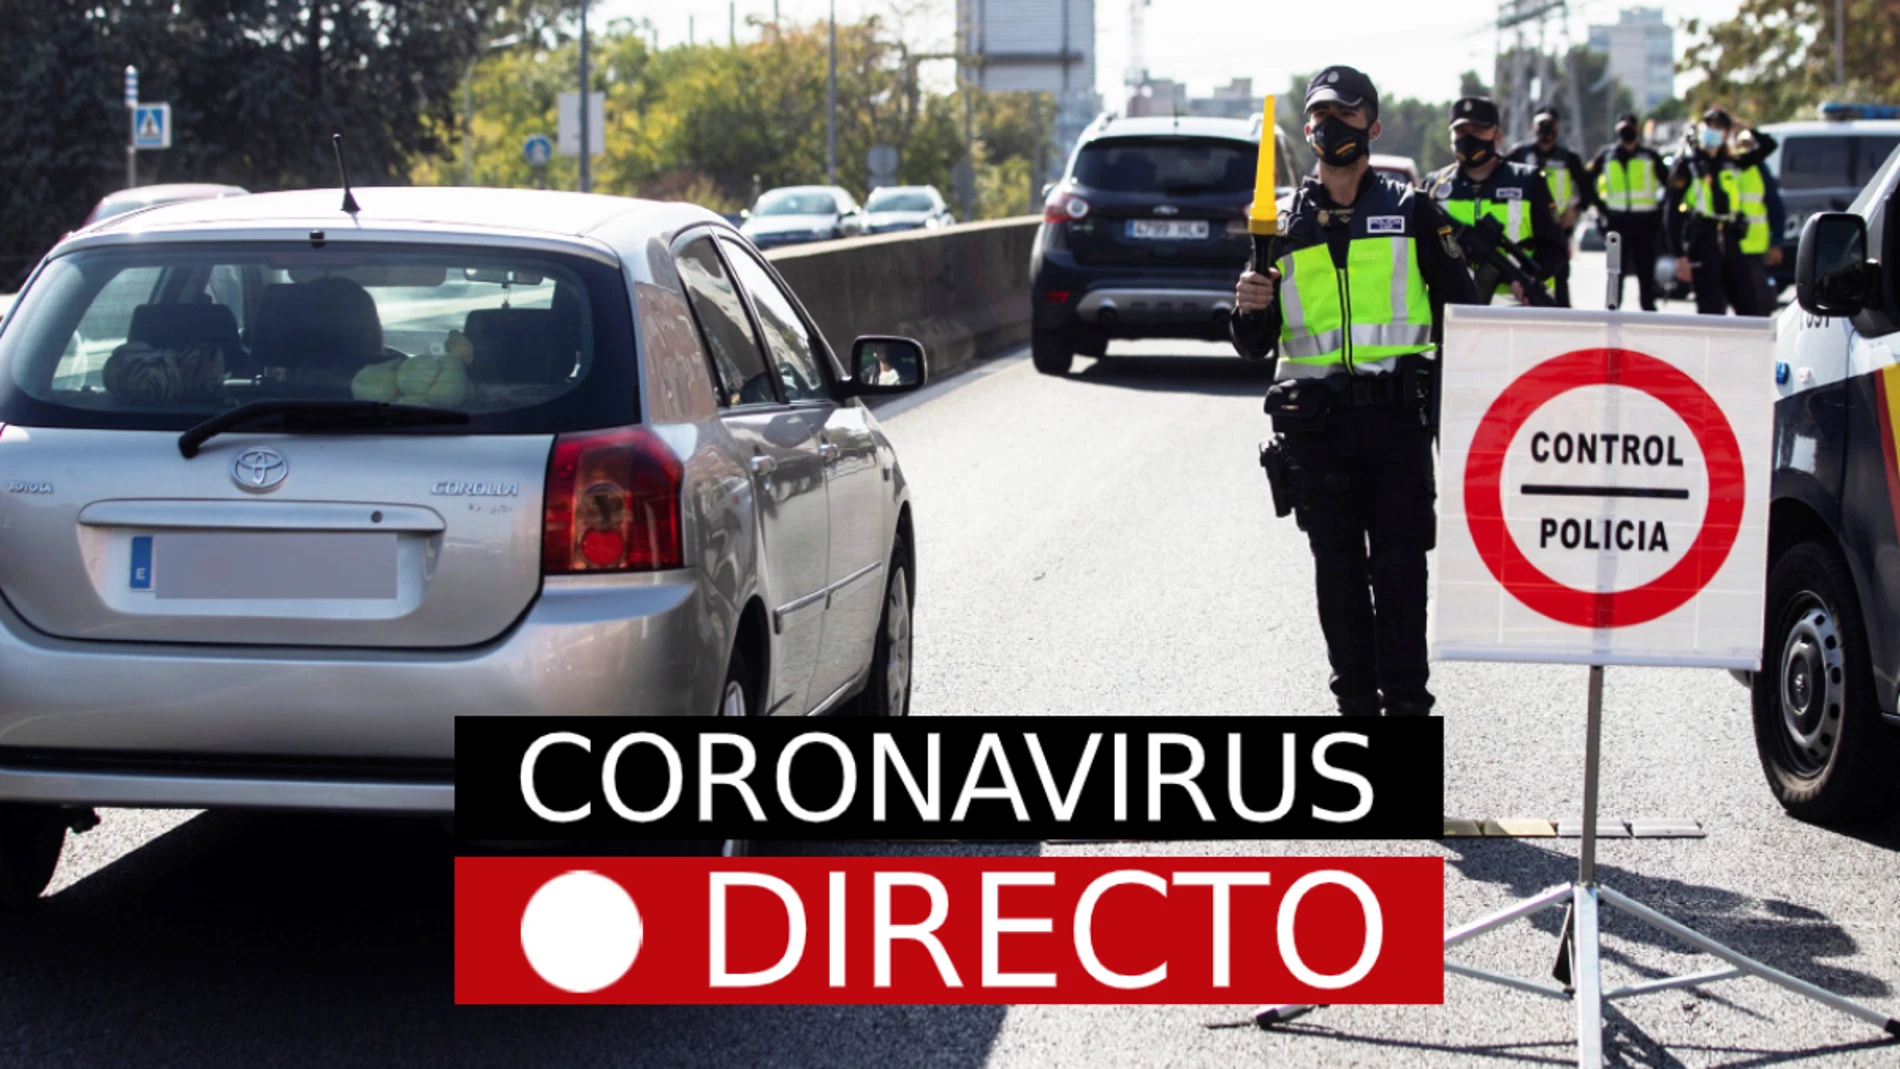 Estado de alarma por Coronavirus en España y zonas en Madrid: Última hora del toque de queda, confinamiento por COVID-19, EN DIRECTO